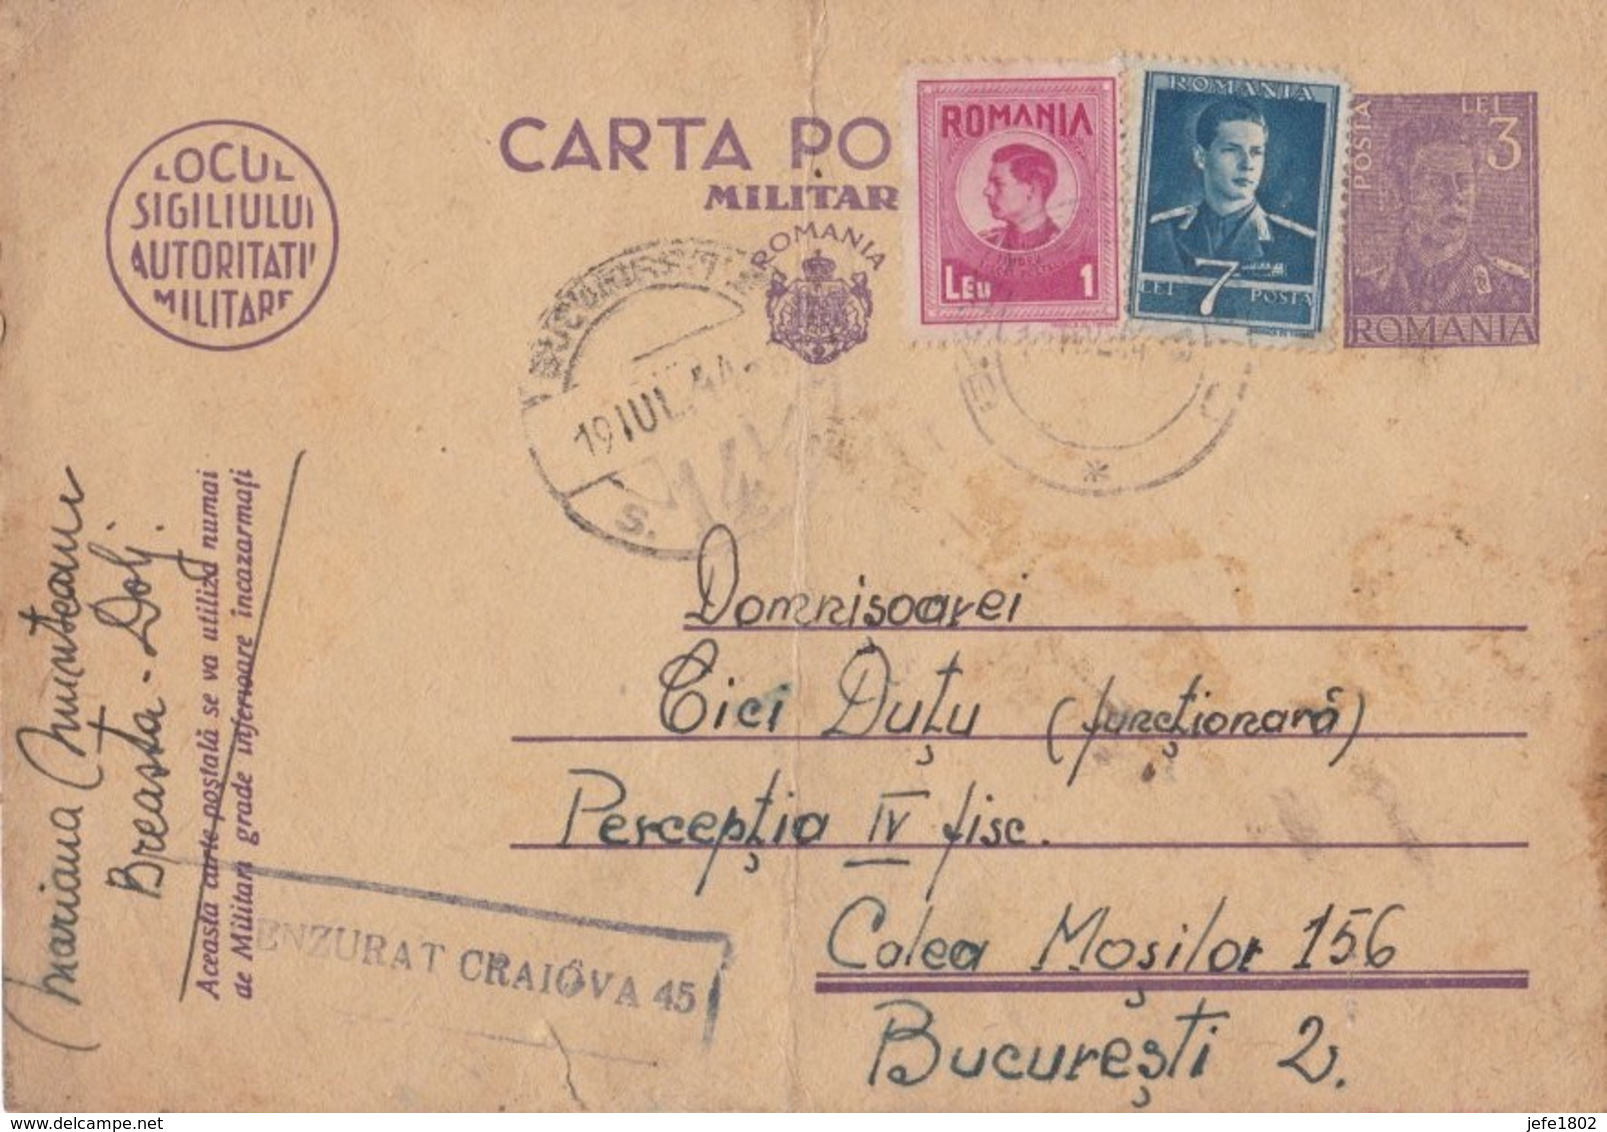 WO II - Carta Postala - Militara Gratuita - 11 Lei - Portofreiheit